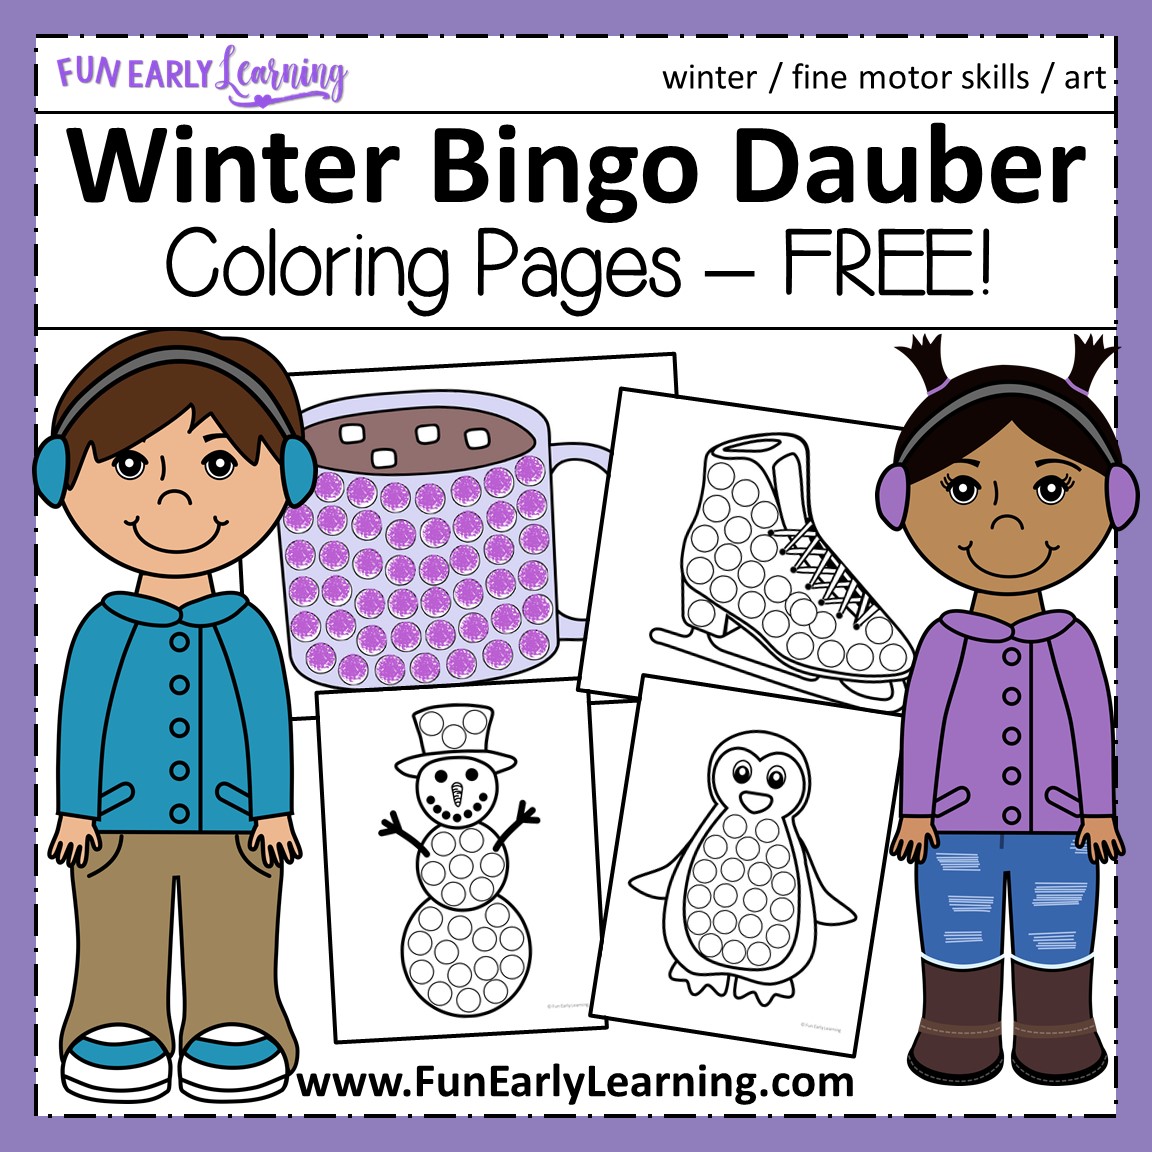 bingo-dauber-free-printables